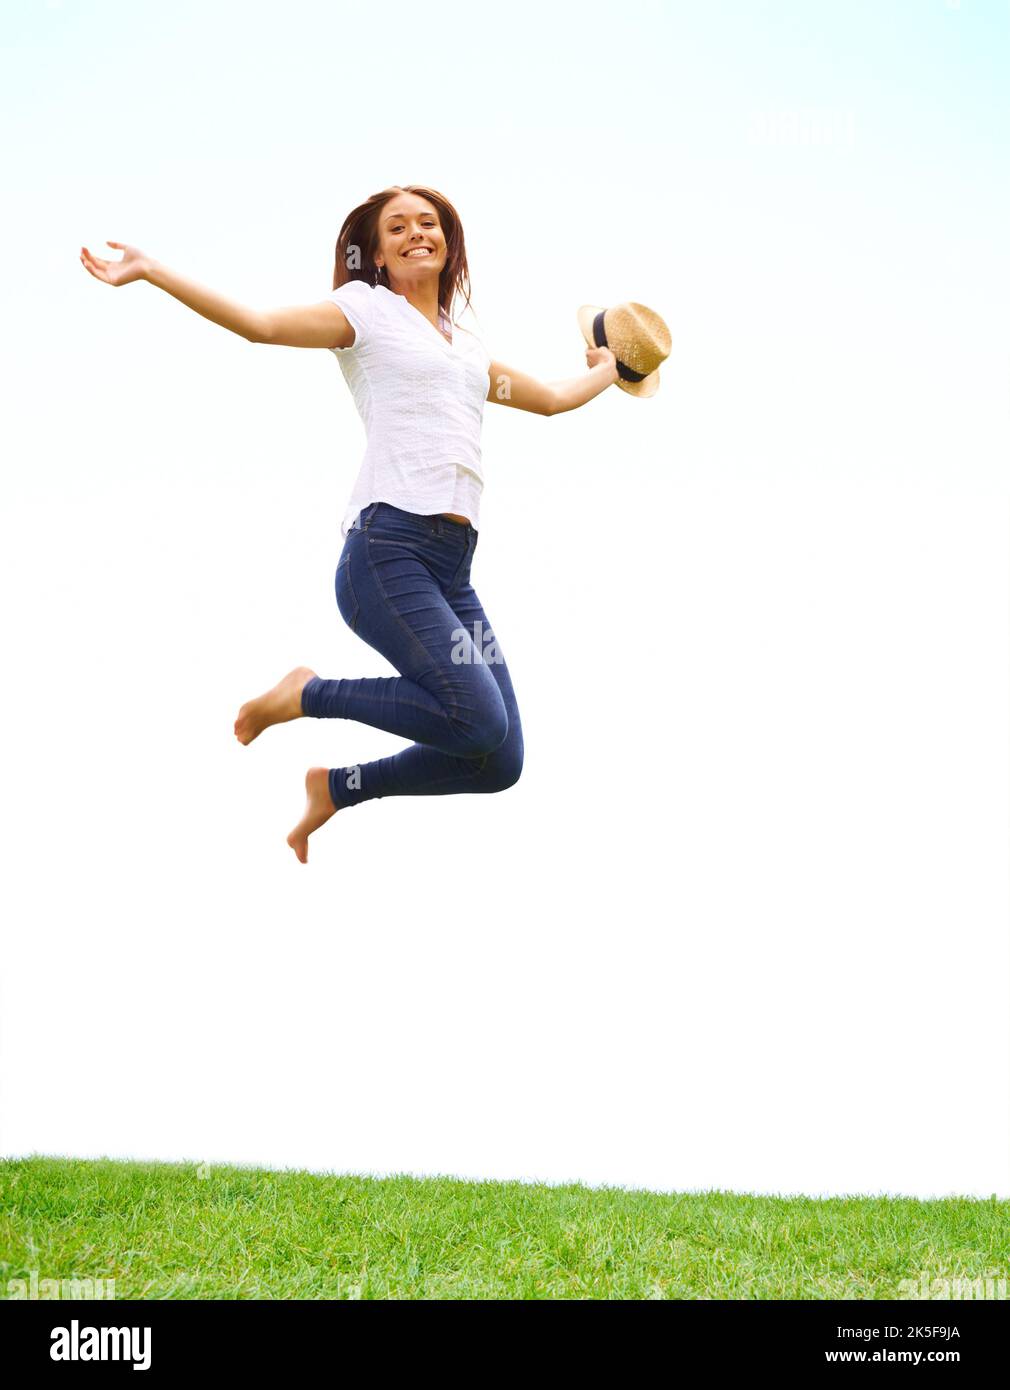 Gefüllt mit den Freuden des Frühlings. Junge Frau springt vor Freude, während sie sich an ihrem Hut festhält. Stockfoto